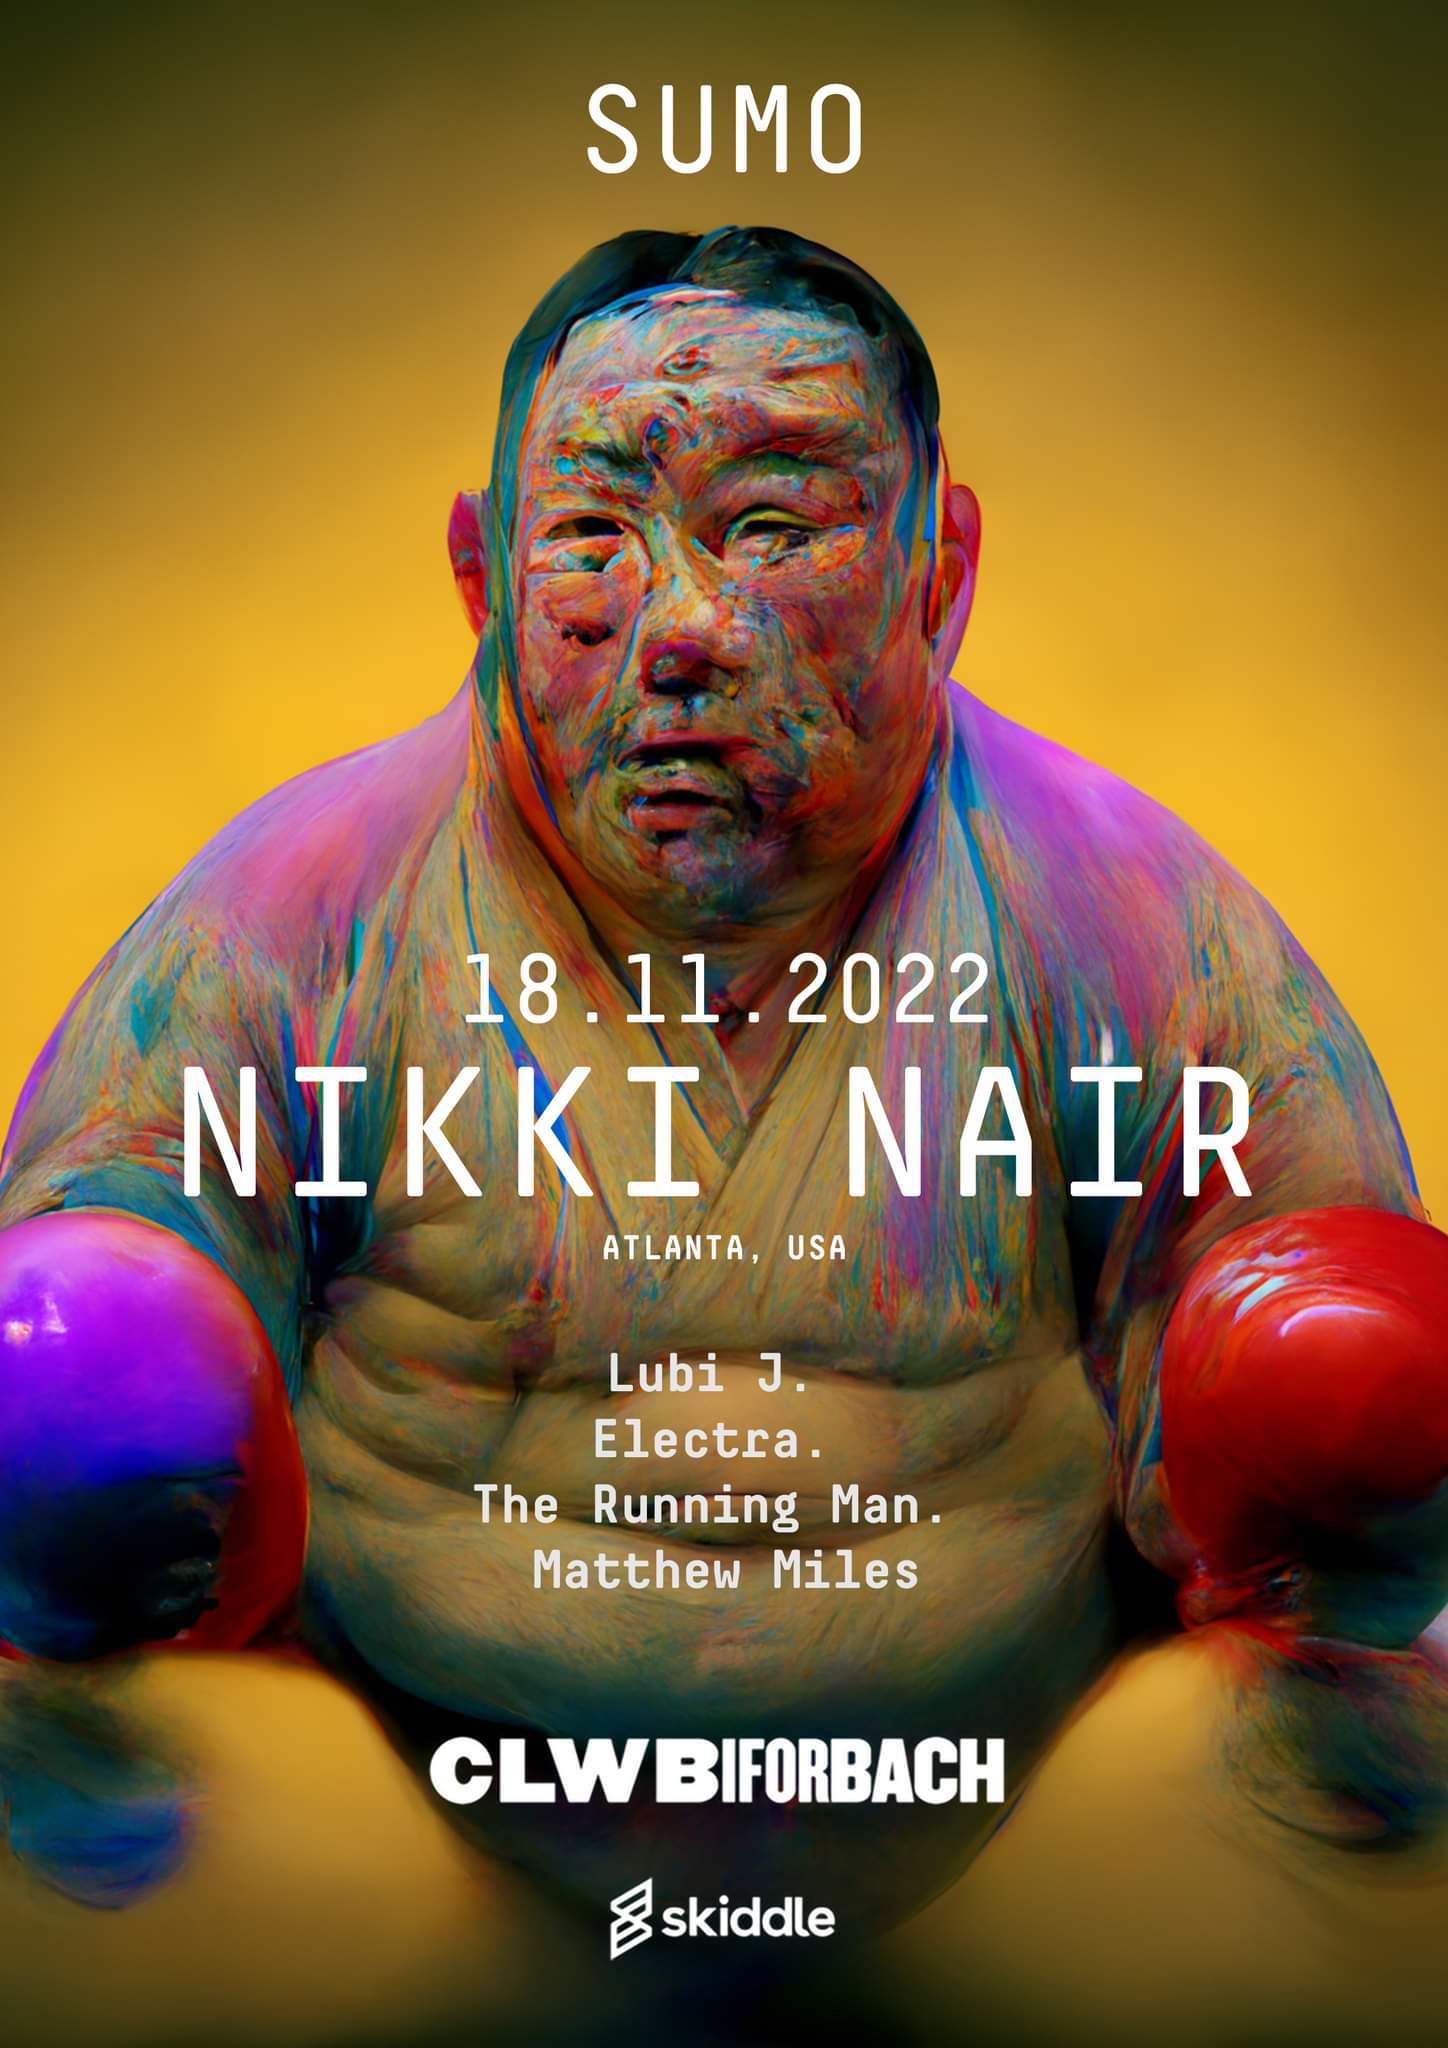 Sumo presents Nikki Nair - Página frontal